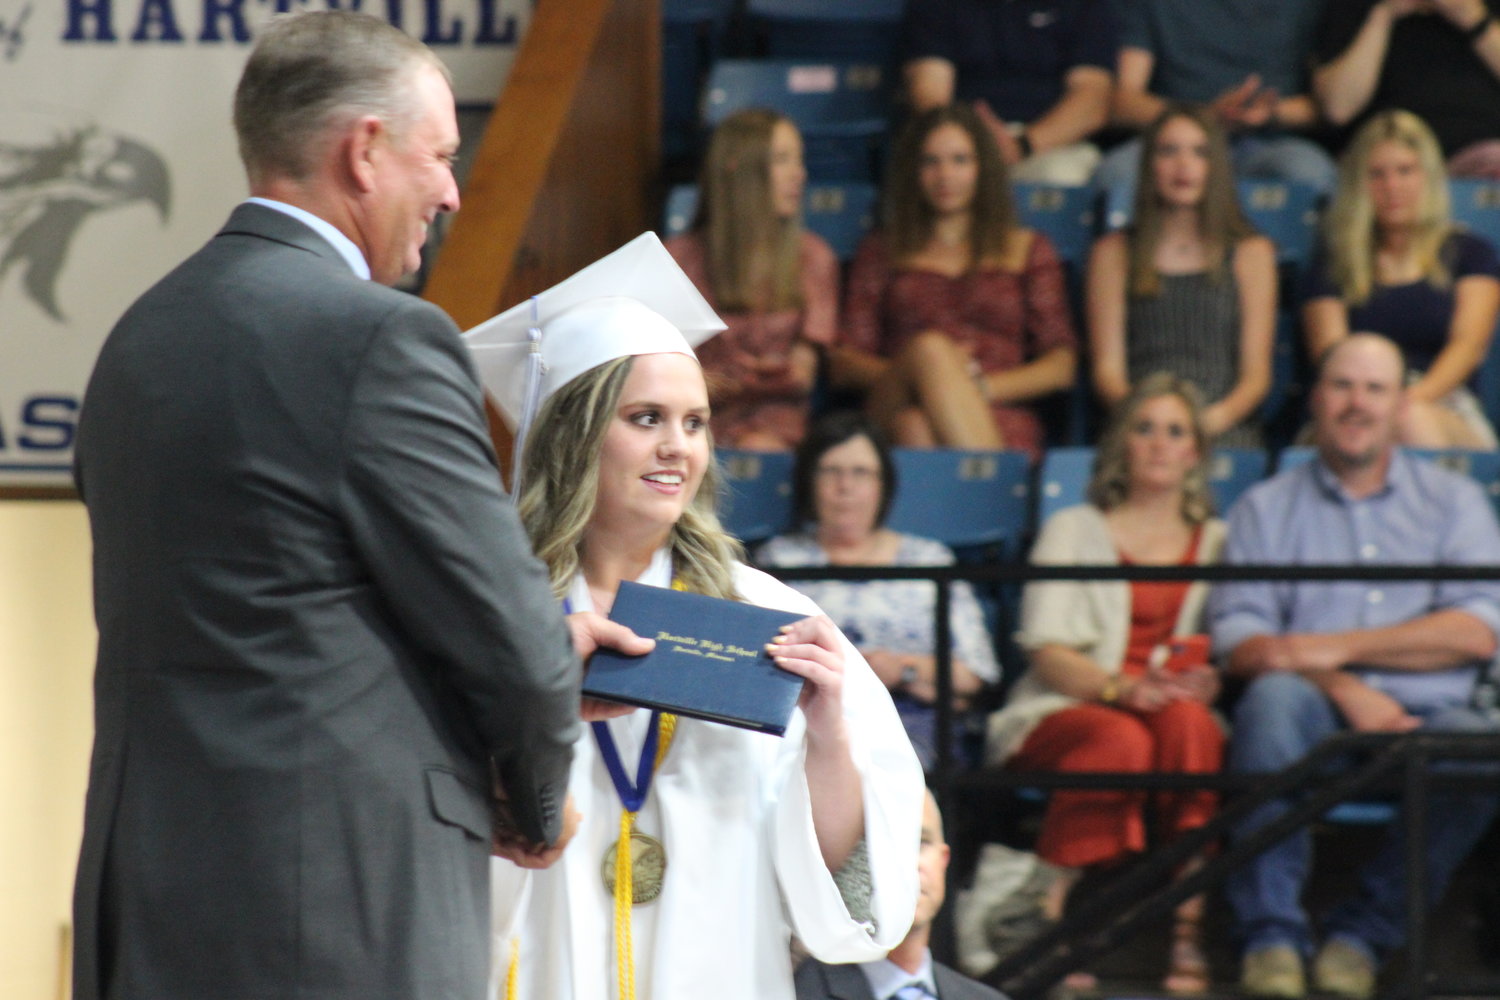 Salutatorian Bailey Martin receives her diploma.